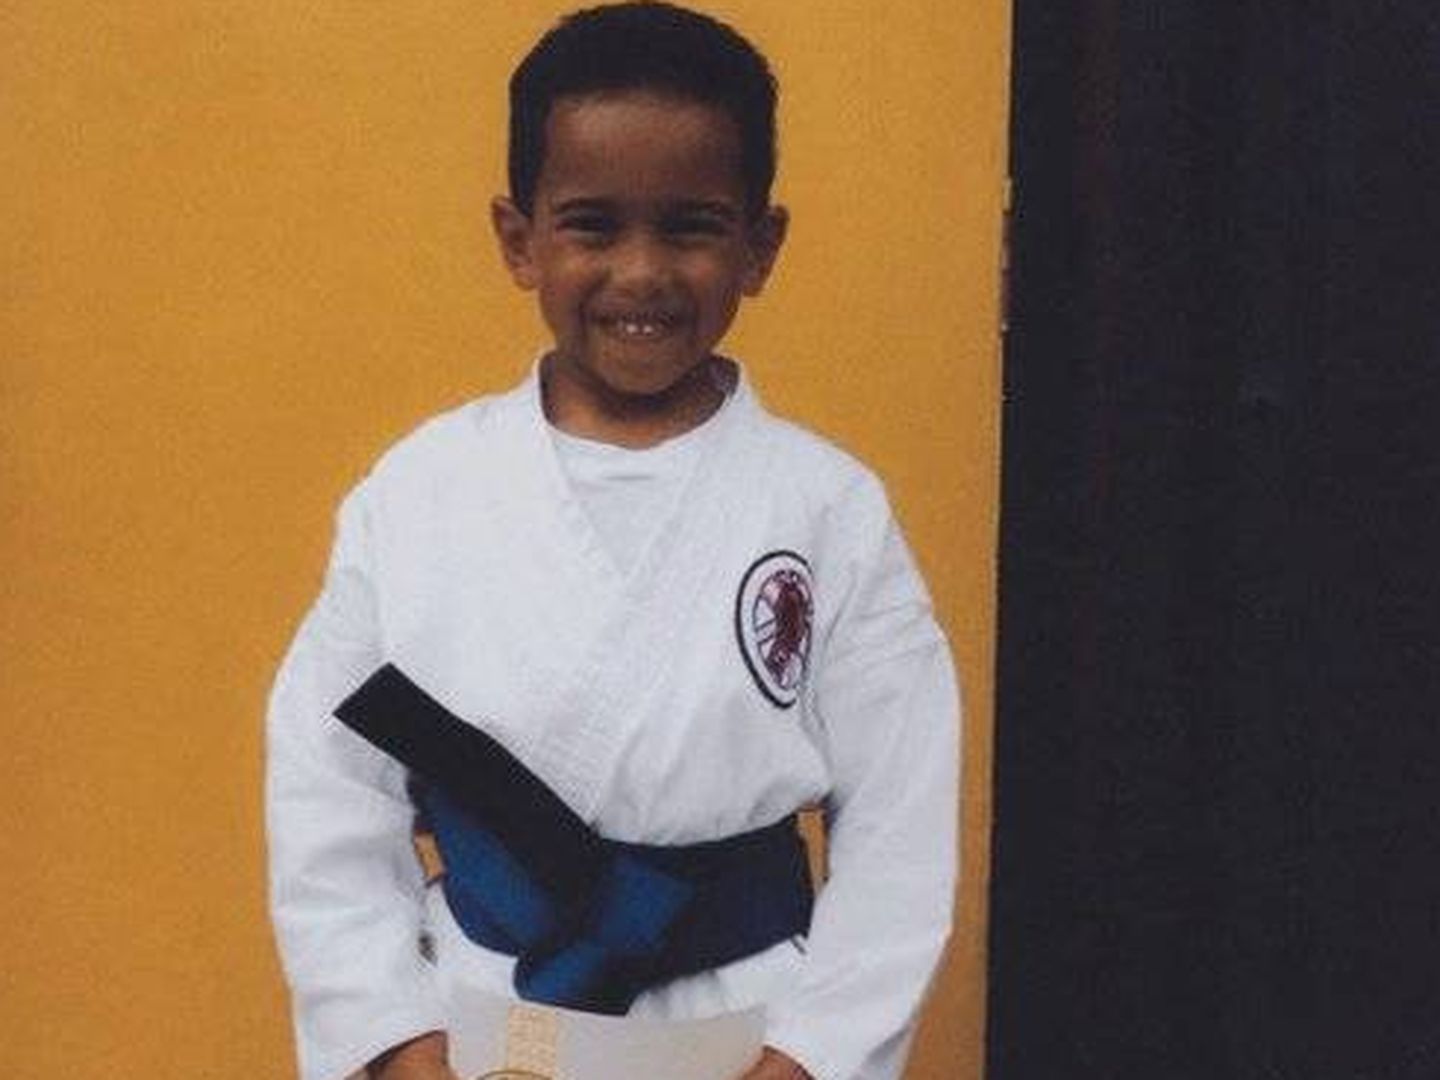 Hamilton siempre recuerda que tuvo que aprender karate de niño para defenderse